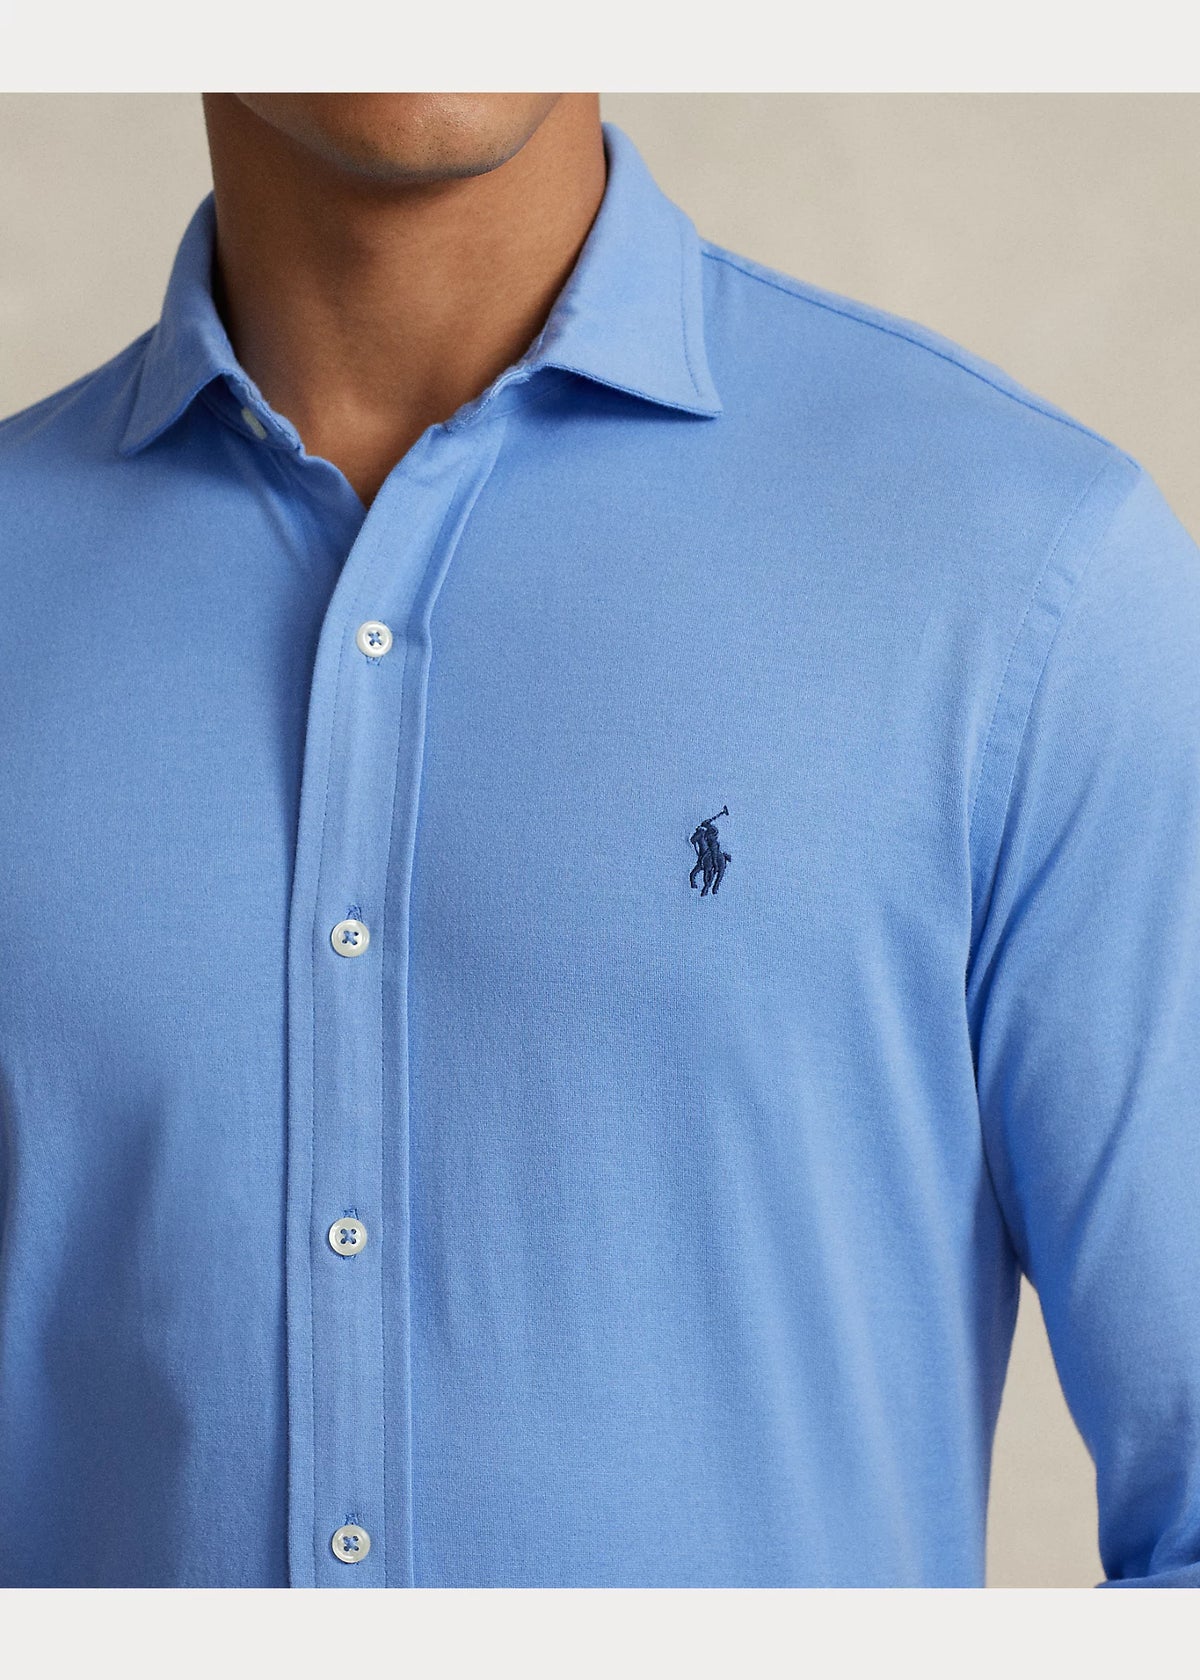 Jersey Shirt - Harbour Blue